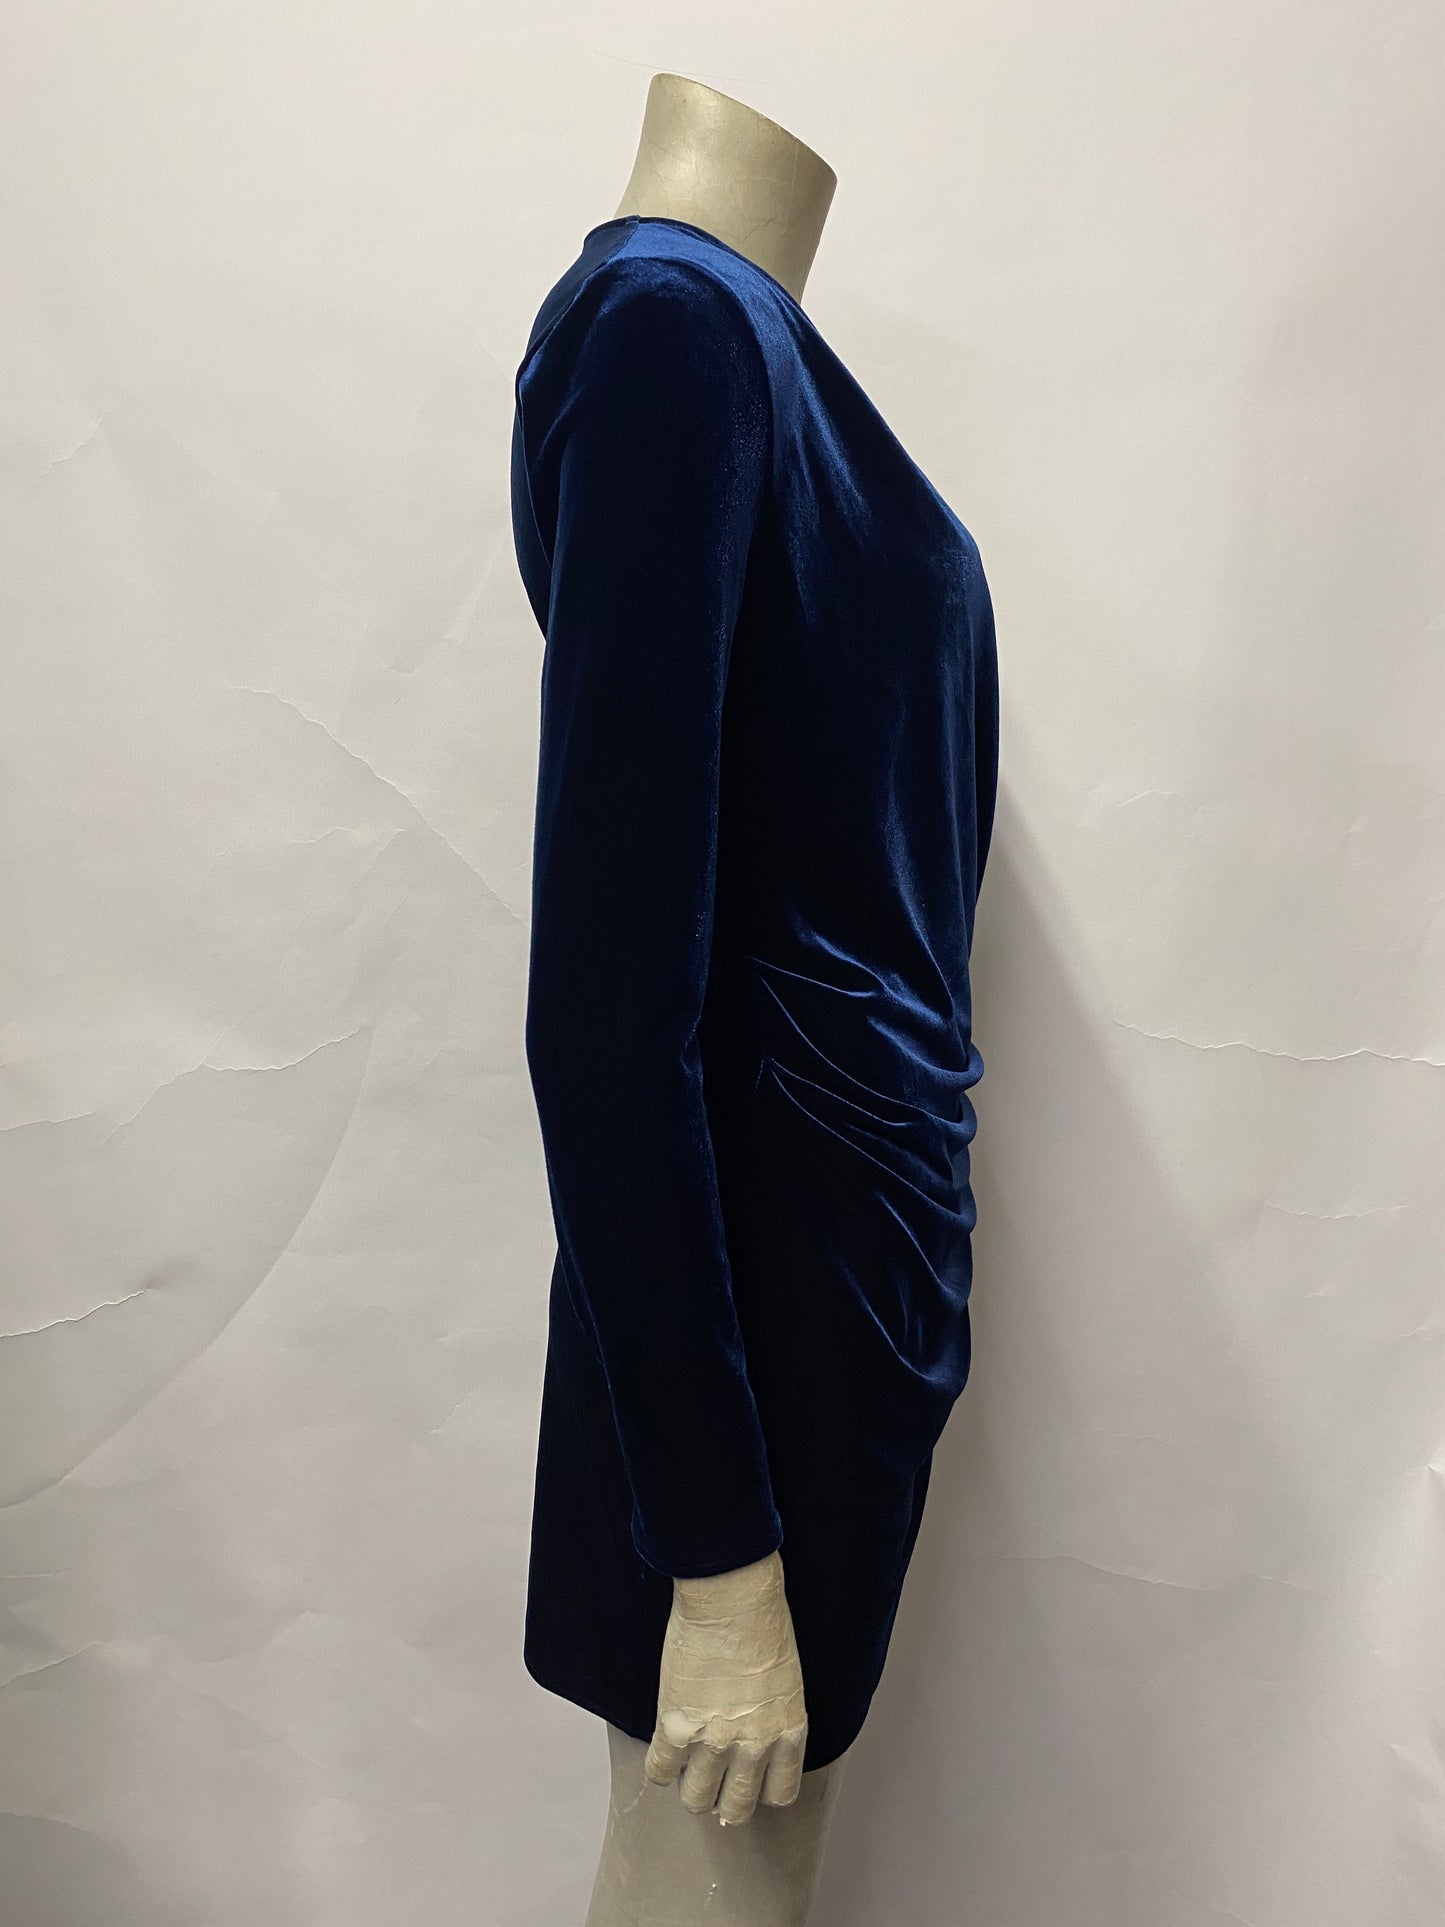 Topshop Dark Blue Velvet Mini Dress 8 BNWT